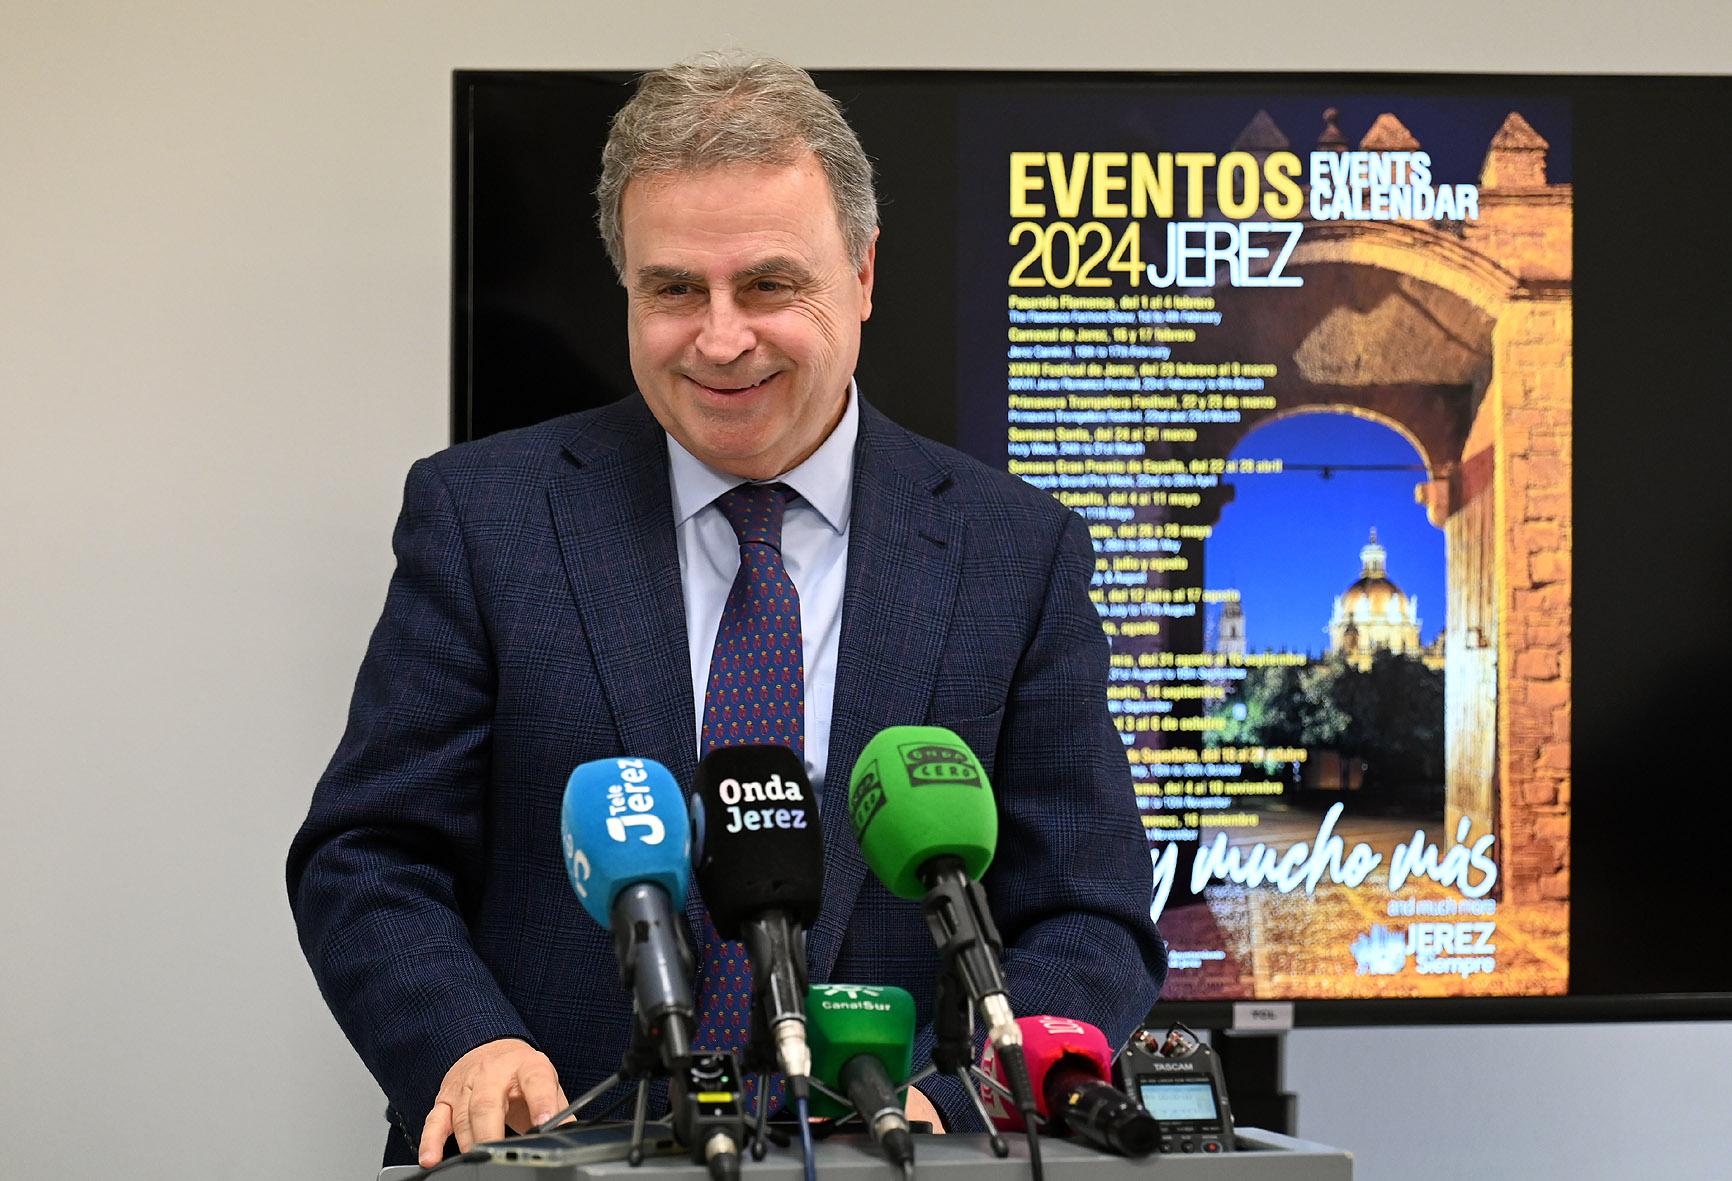 El Ayuntamiento gestiona casi 6 millones de euros en proyectos turísticos para impulsar el destino Jerez